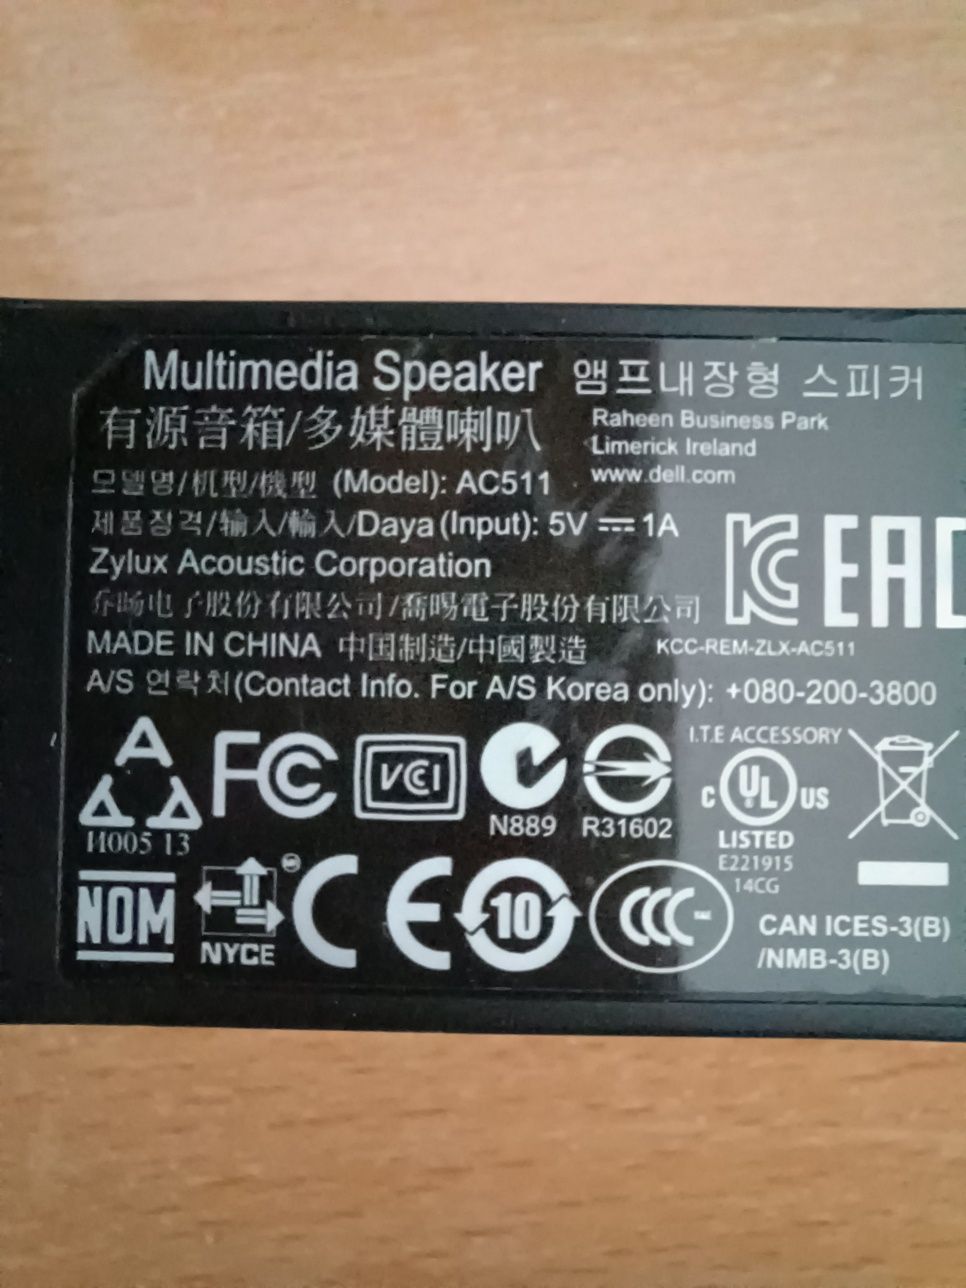 Multimedia speaker dell model AC511